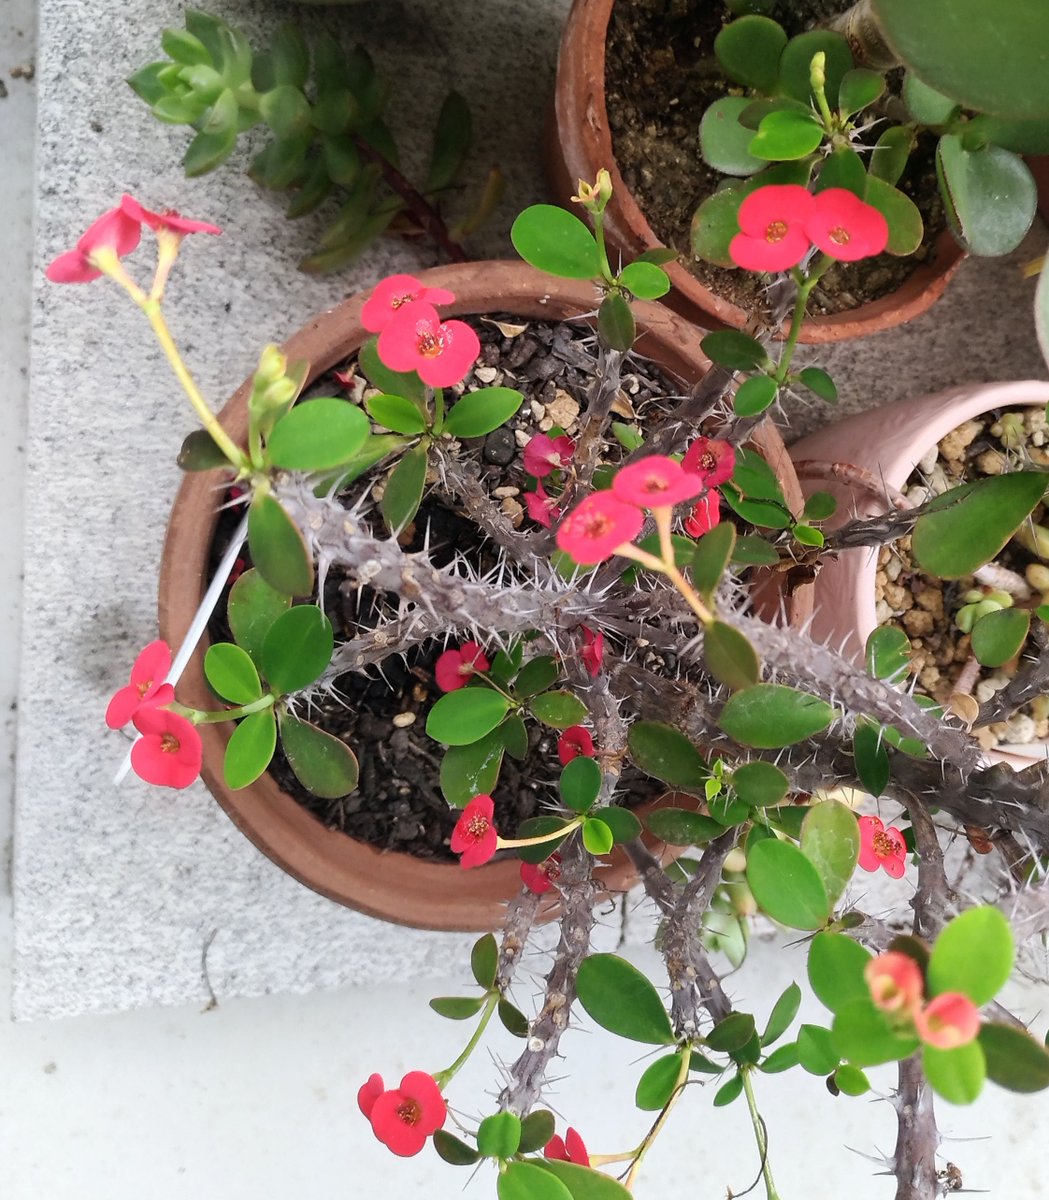 こころんグリーン ハナキリンの赤い花が次々に開いています 赤い平べったい花びら 苞 が 可愛らしいです 鮮やかな緑色の葉っぱも 増えてきました ハナキリン 赤い花 マダガスカル島原産 多肉植物 苞 初夏 初夏の花 園芸 ガーデニング 熊本